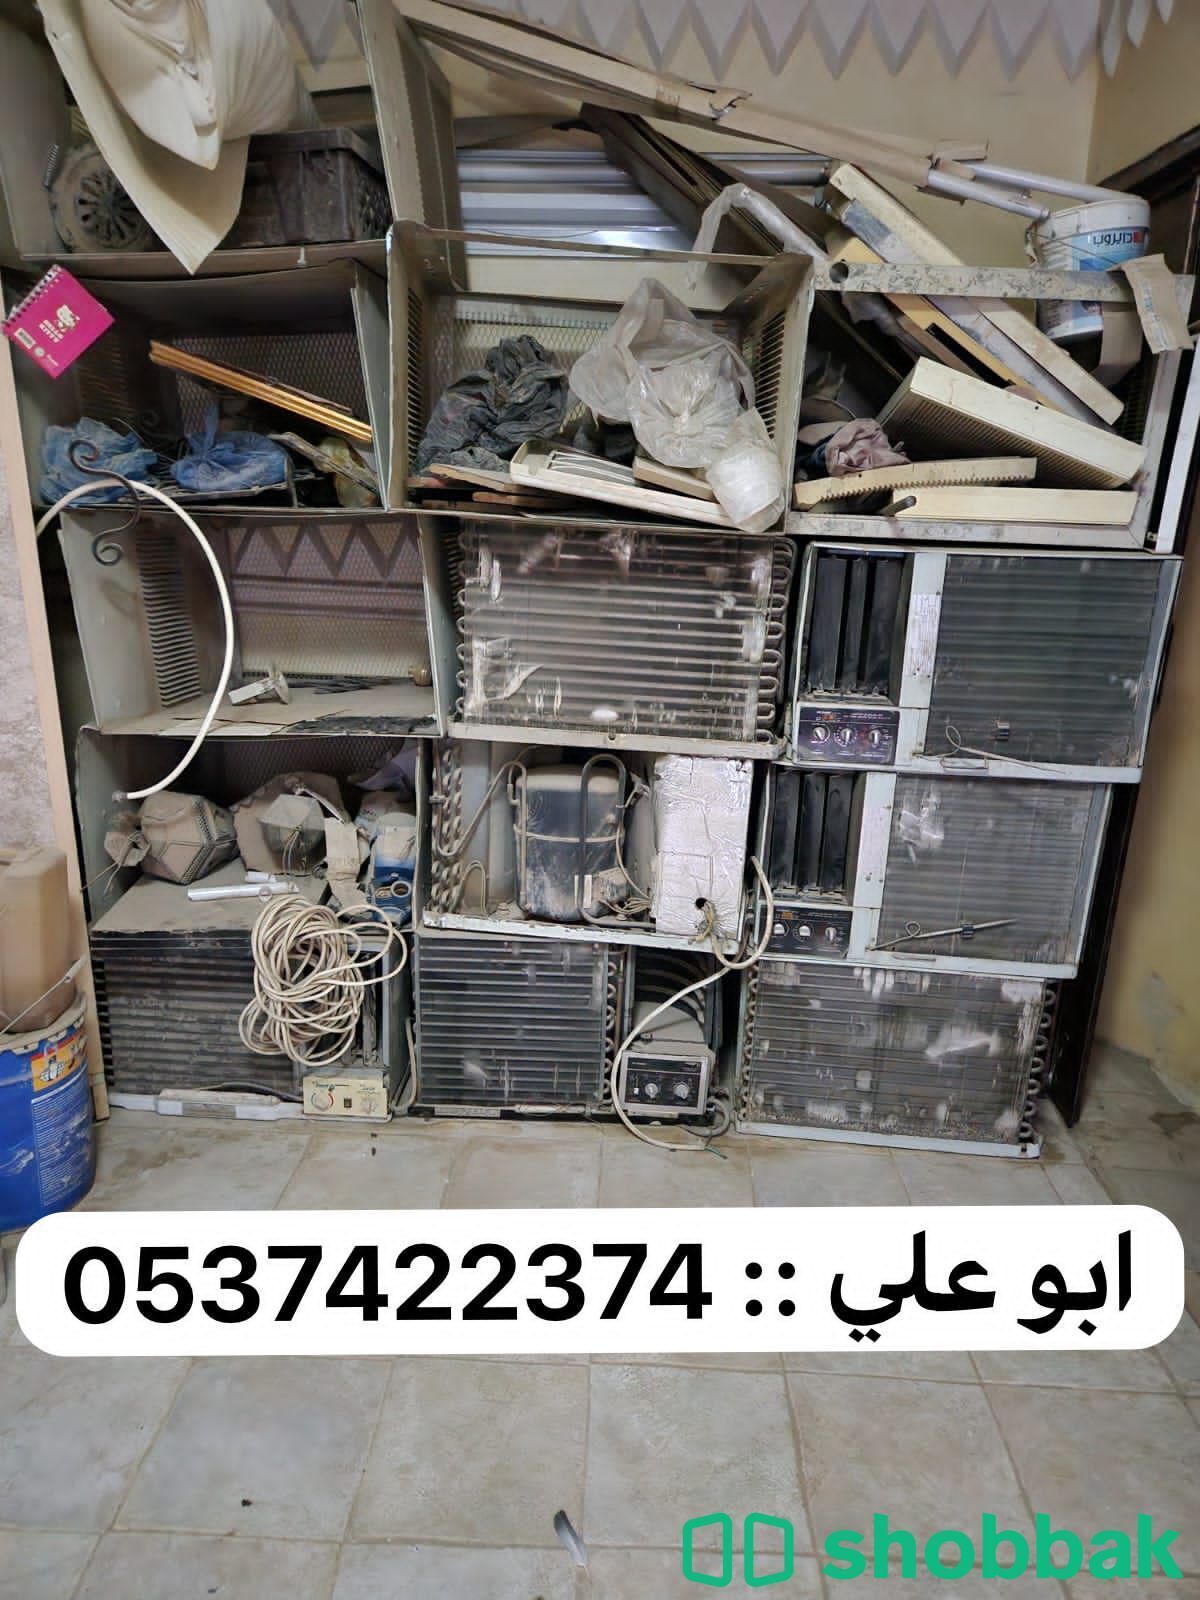 شراء مكيفات مستعملة بالرياض 0537422374 Shobbak Saudi Arabia